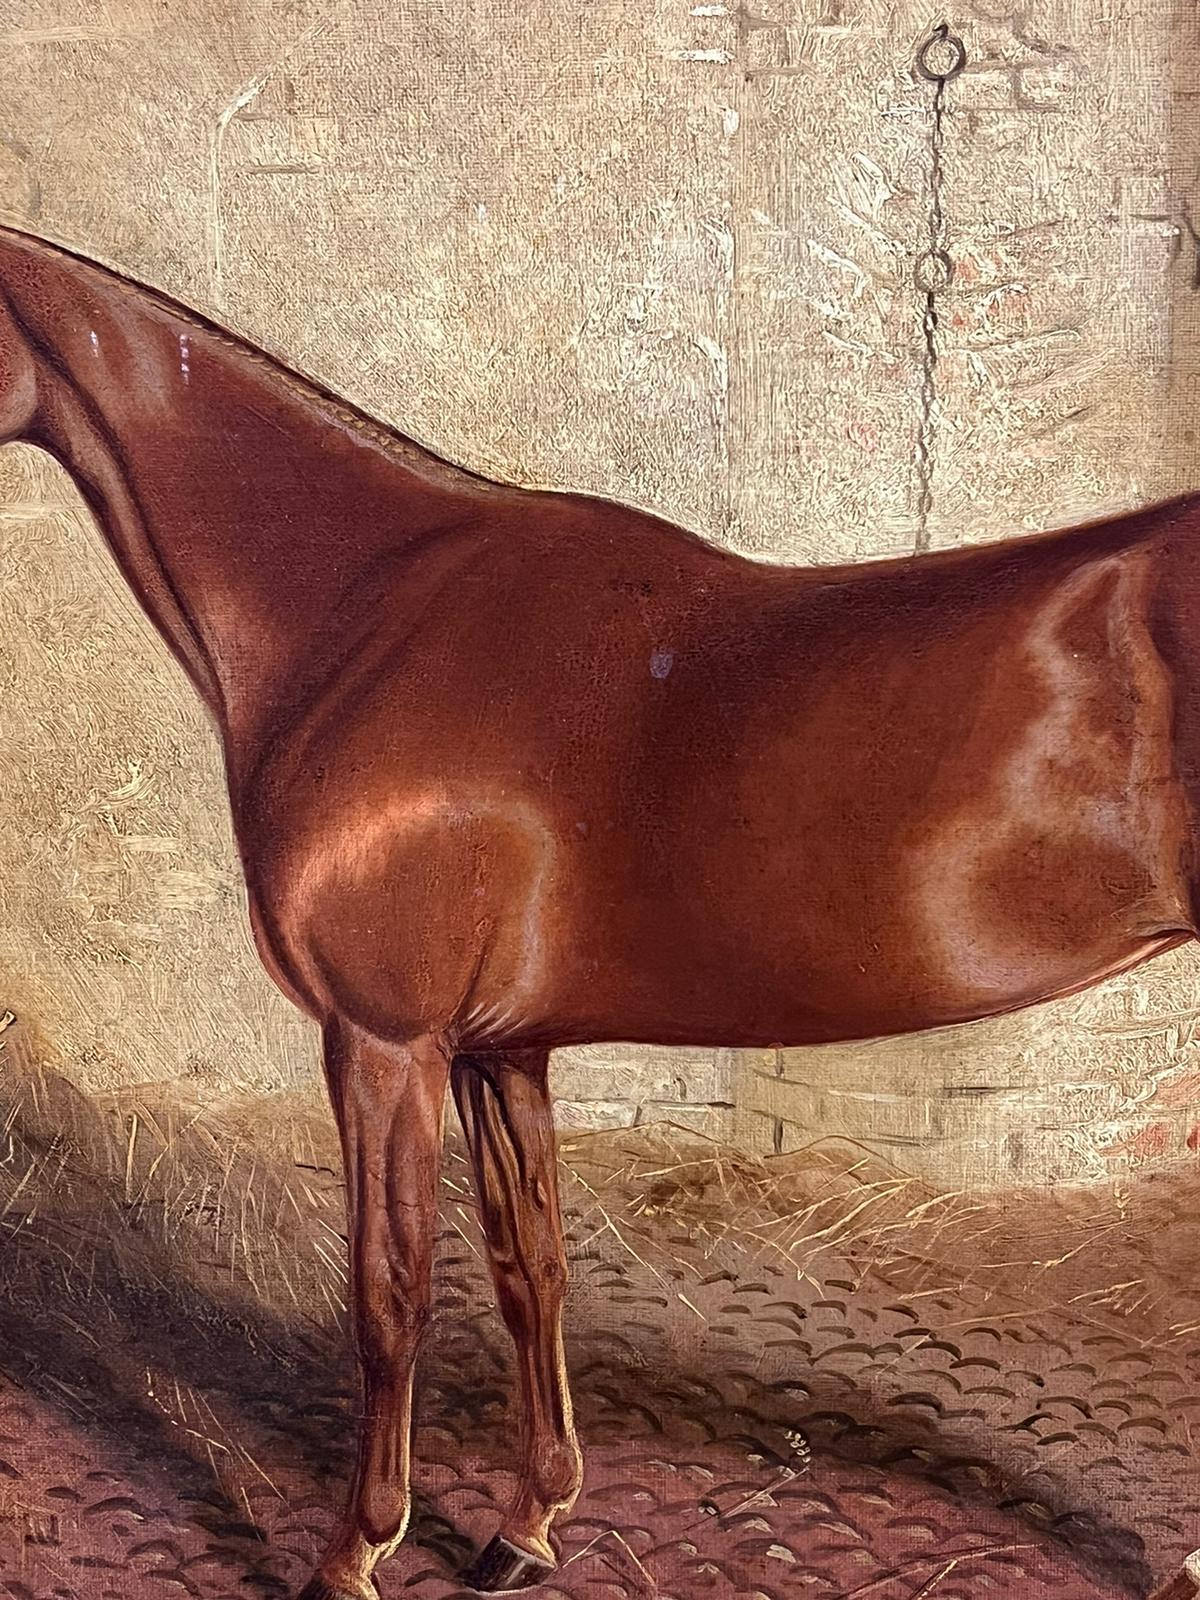 Porträt eines Pferdes in einem Stall
von F. C. Partridge, signiert und datiert 1880er Jahre
Englischer Künstler, 19. Jahrhundert
Öl auf Leinwand, gerahmt
Gerahmt: 21 x 28 Zoll 
Leinwand: 18 x 24 Zoll
Provenienz: Privatsammlung,